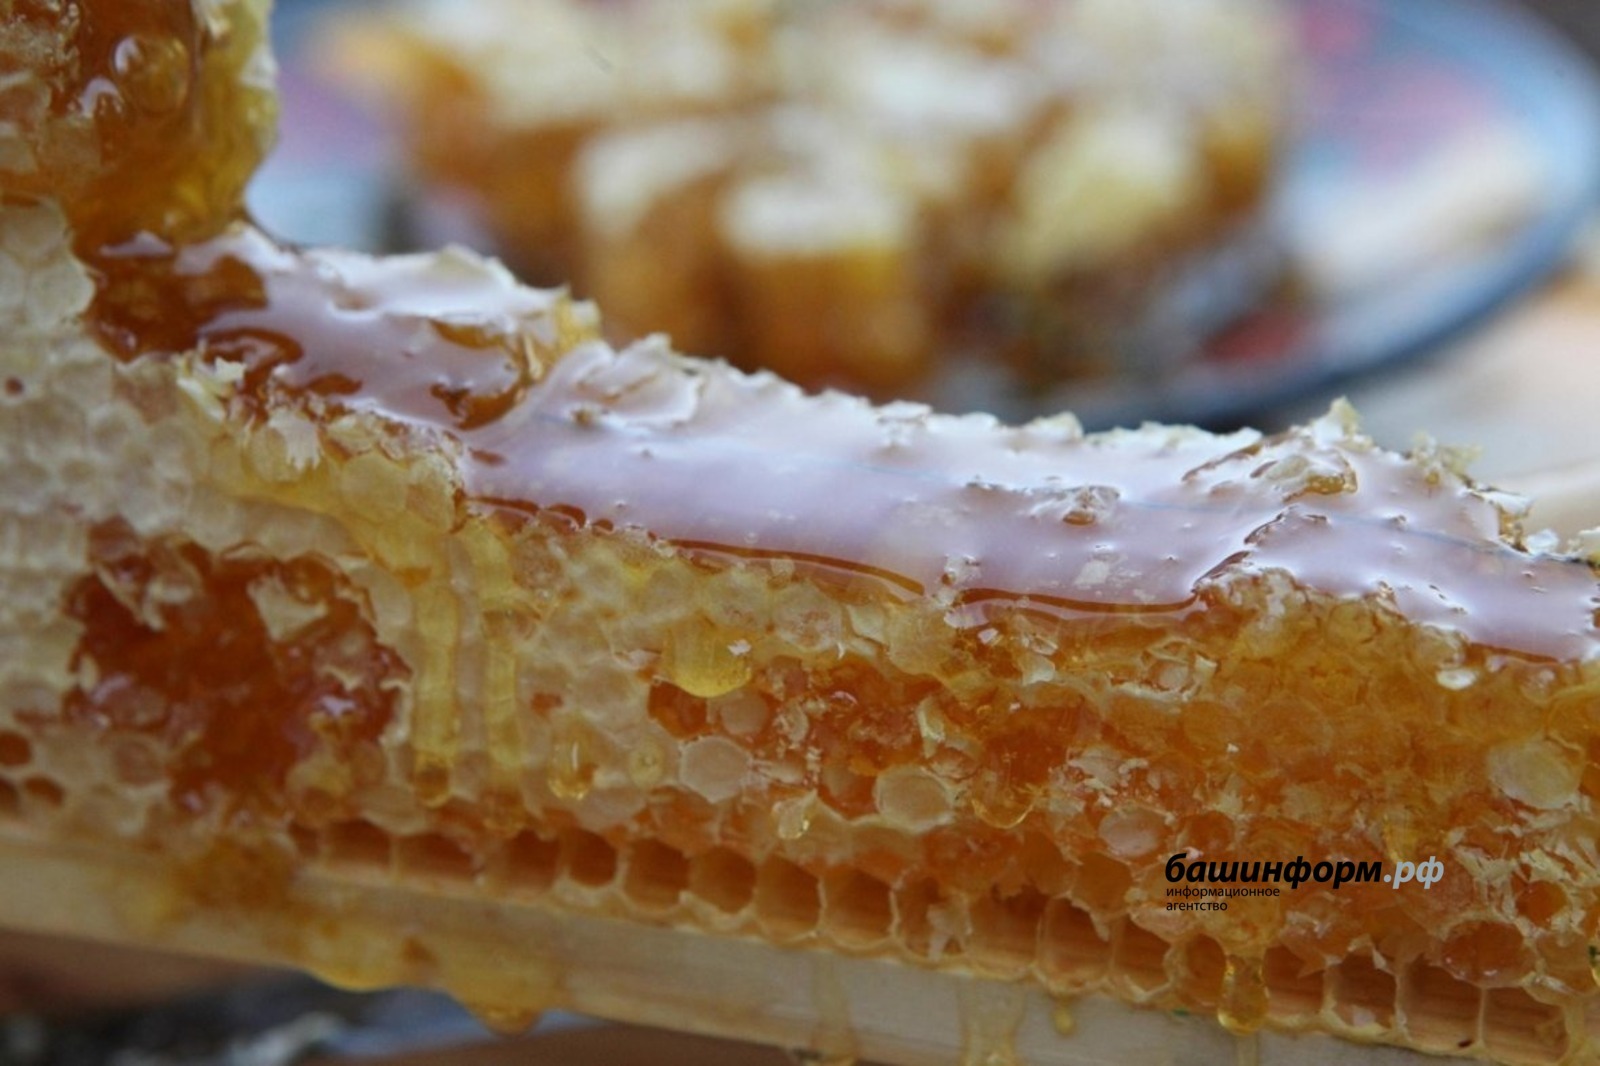 Пчеловодам Башкирии частично компенсируют покупку пчел местной породы и экспертизу мёда